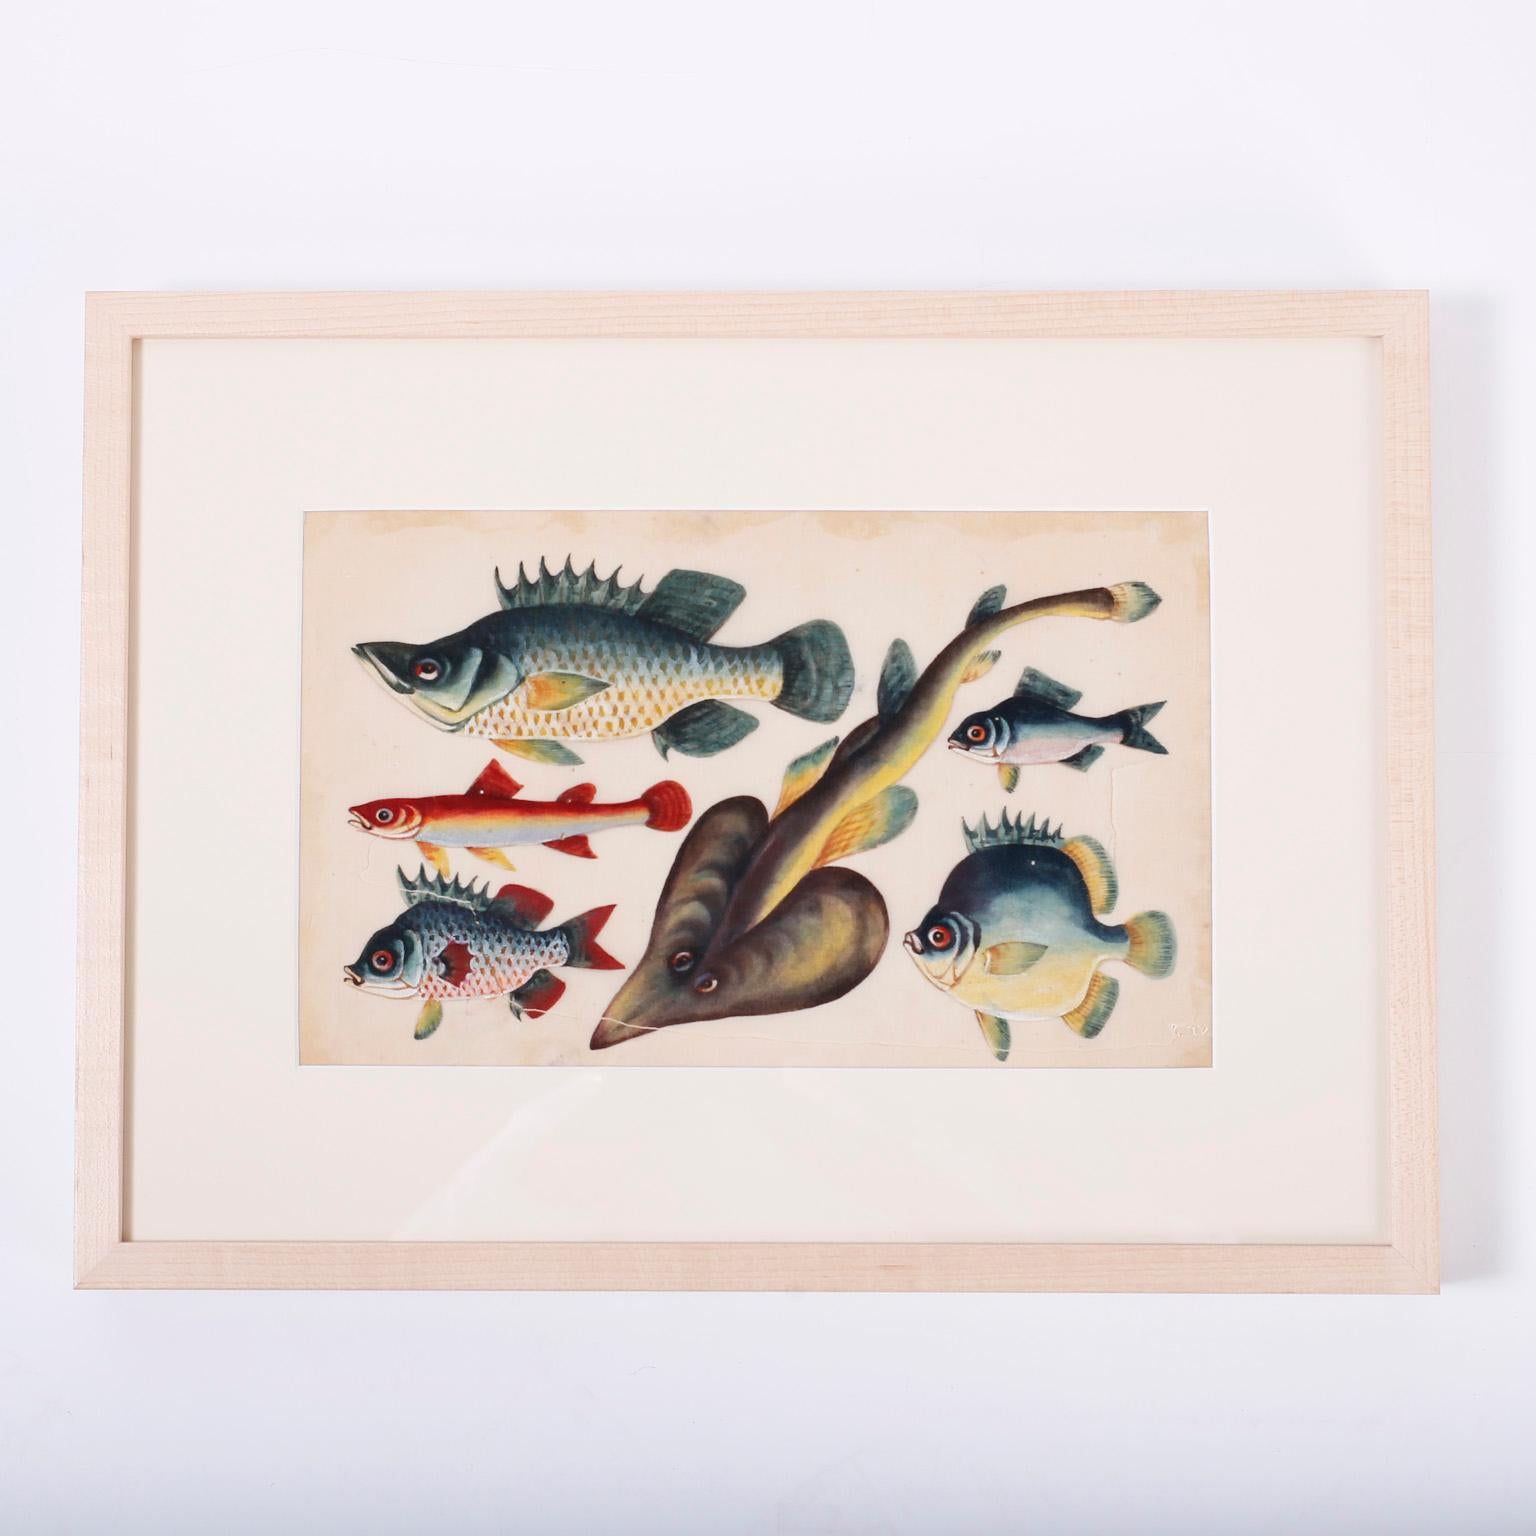 Ensemble de trois rares peintures chinoises anciennes encadrées et encadrées de poissons. Peint sur papier sulfurisé à la gouache avec des couleurs vives dans un style scolaire. Avec l'usure et les rousseurs attendues. Les prix sont fixés à l'unité.